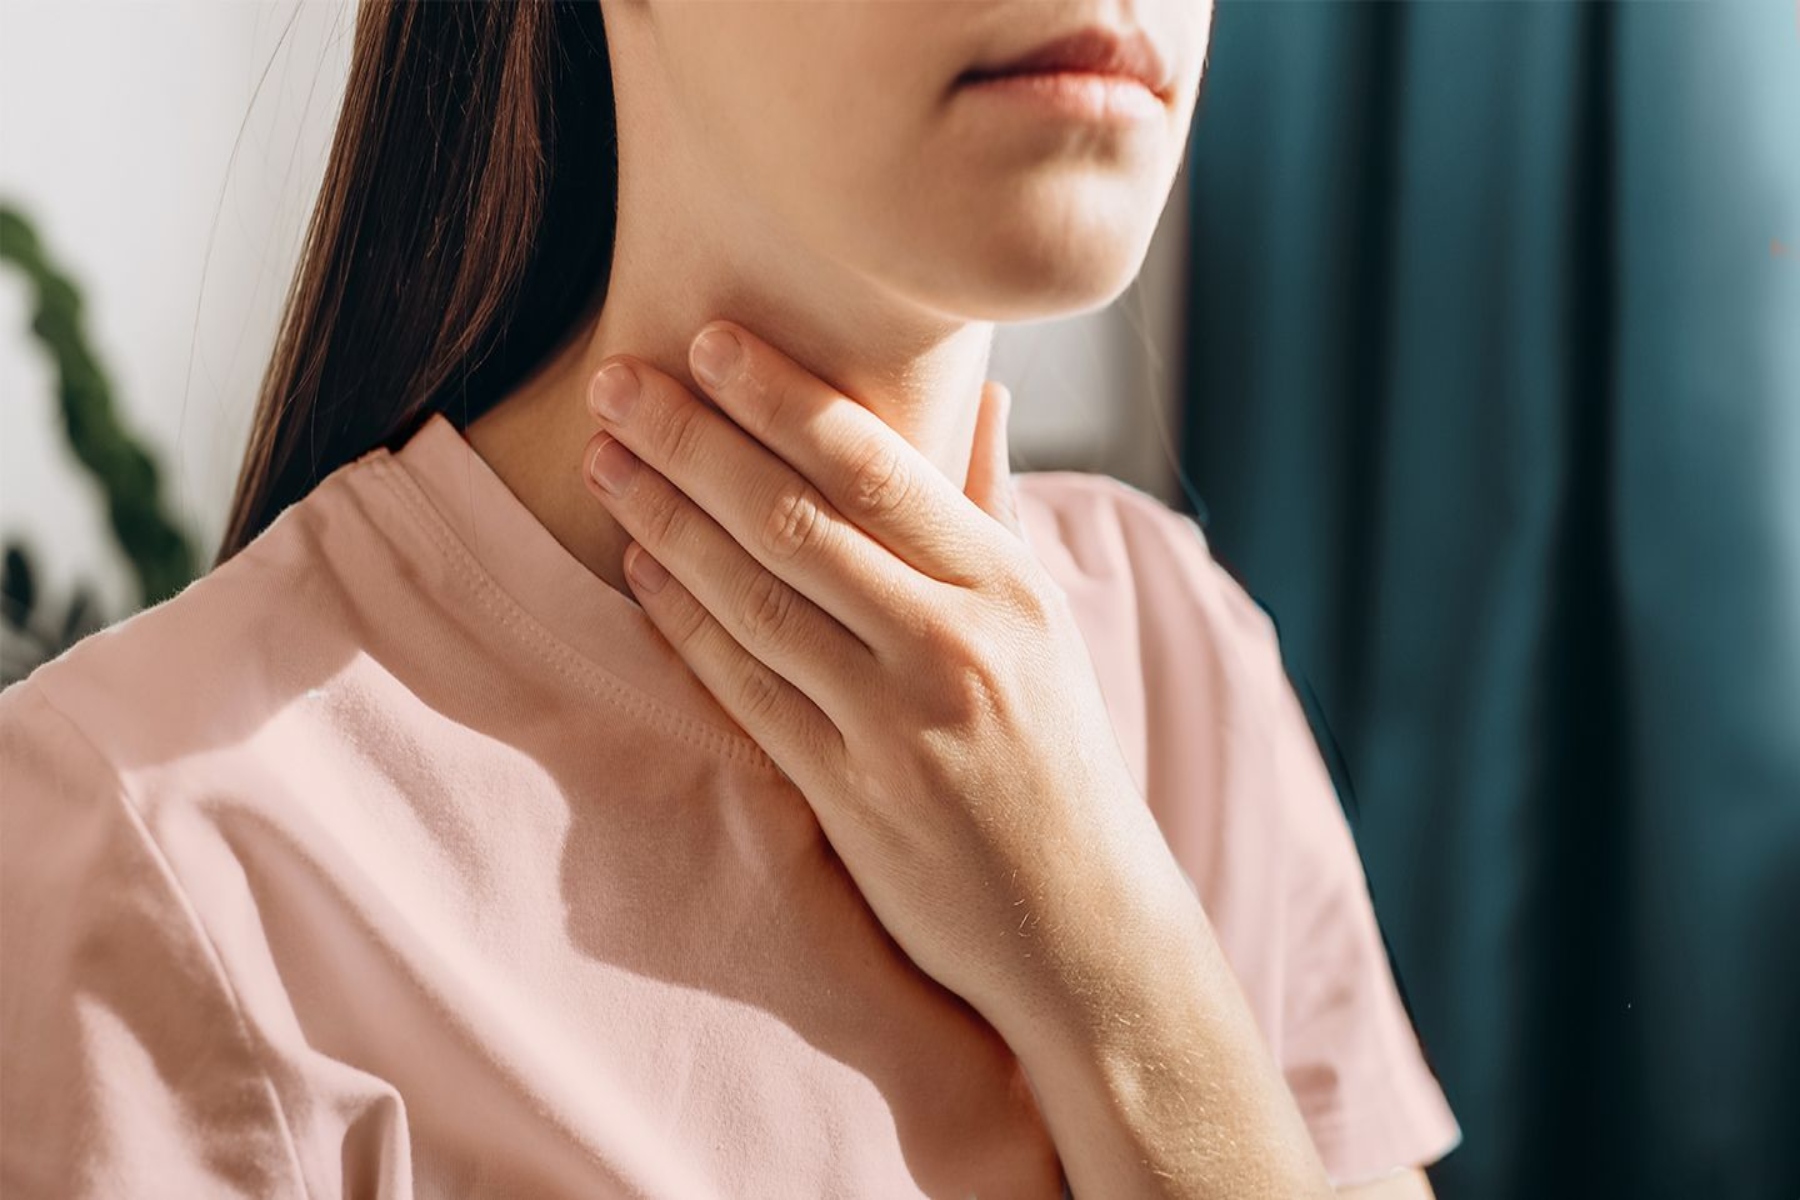 Λαιμός πόνος: Γιατί πονάει ο λαιμός και πώς μπορούμε να το αντιμετωπίσουμε;